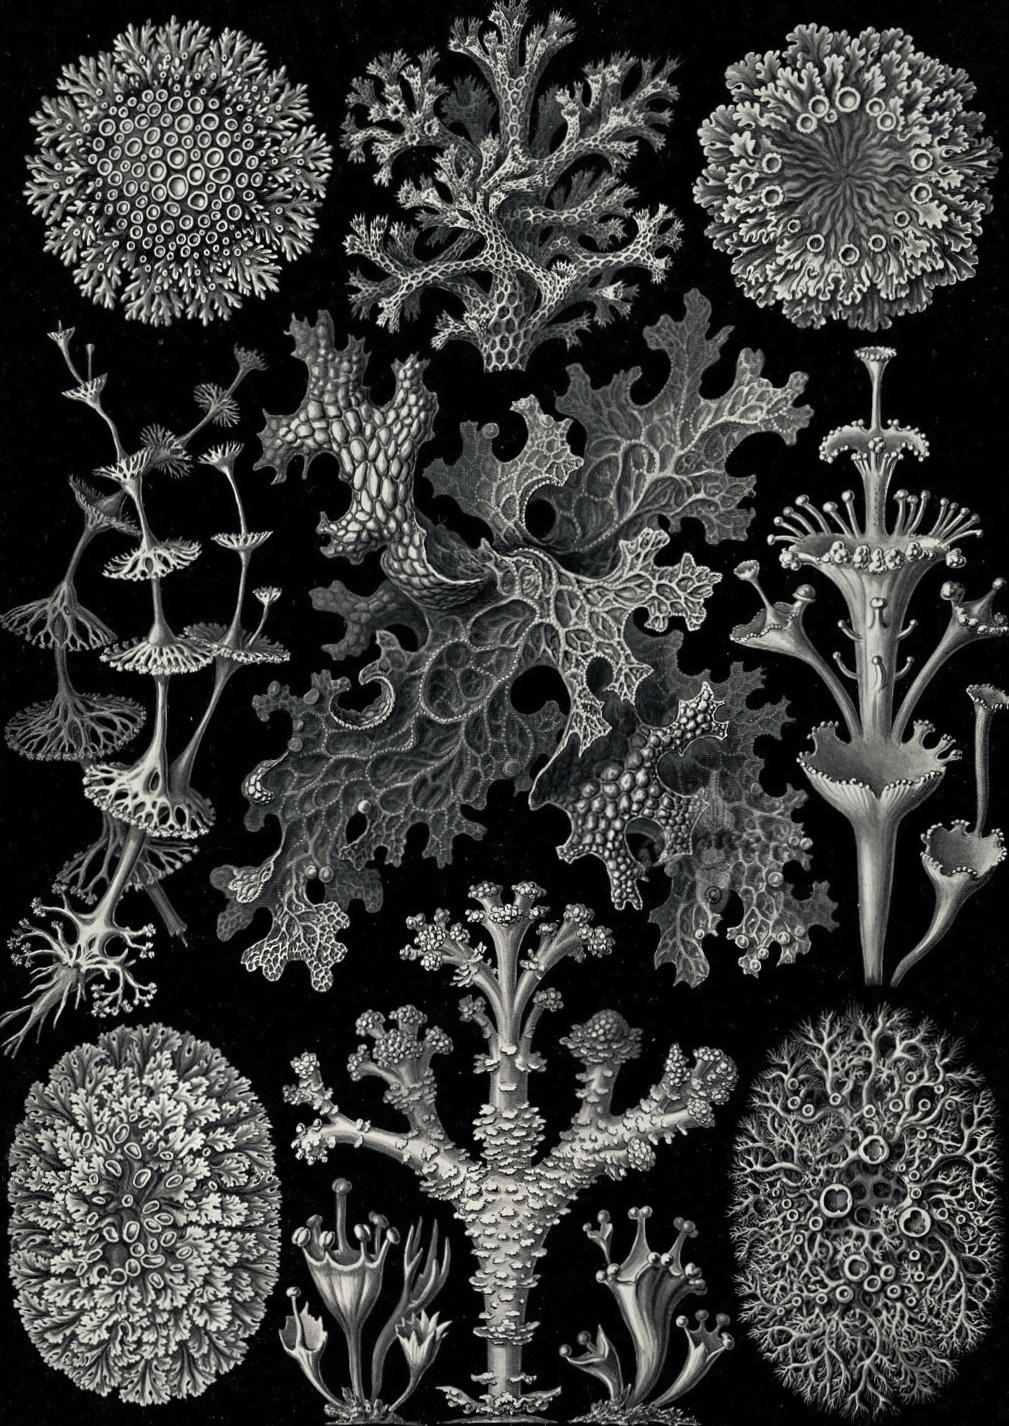 Kunstformen der Natur - Ernst Haeckel 1899-1904 (5).jpg